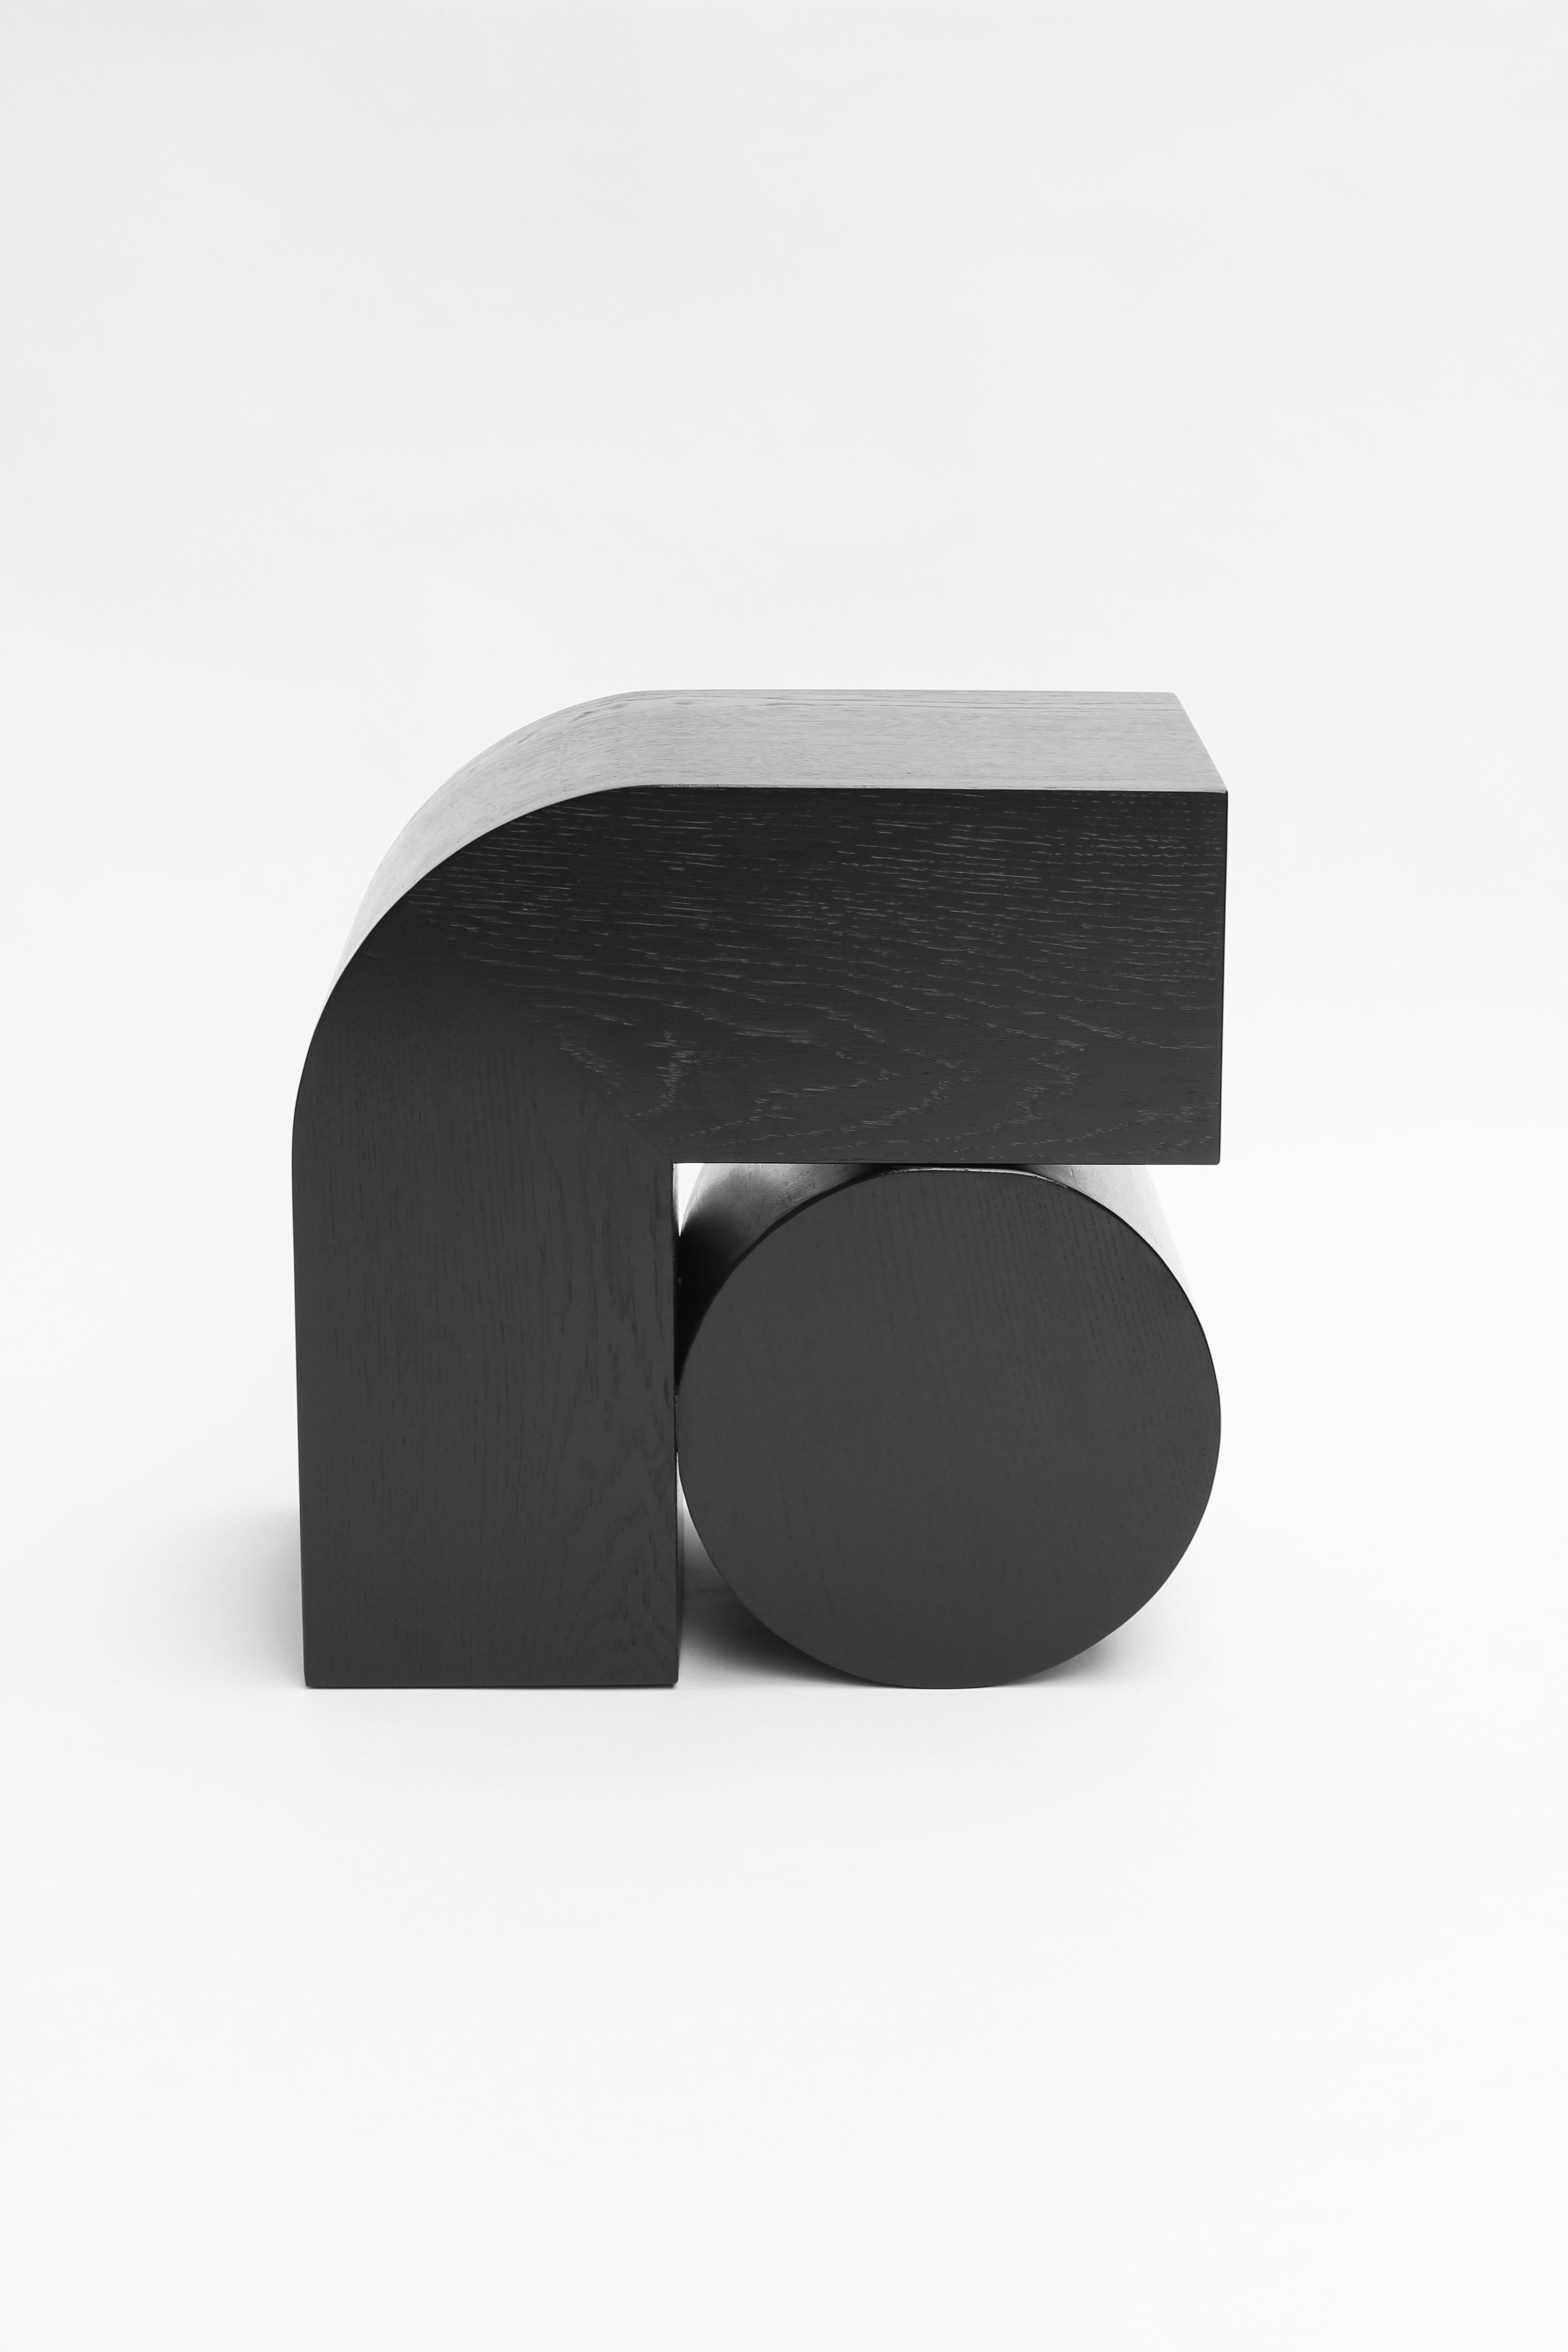 X4 ist eine fortlaufende Serie von einfachen grafischen Formen, die zeitlose und dauerhafte Designs schaffen. Die handgefertigten Holzstücke sind irgendwo zwischen Möbel, Objekt und Skulptur angesiedelt. Die Entwürfe beginnen als 2D-Komposition, die